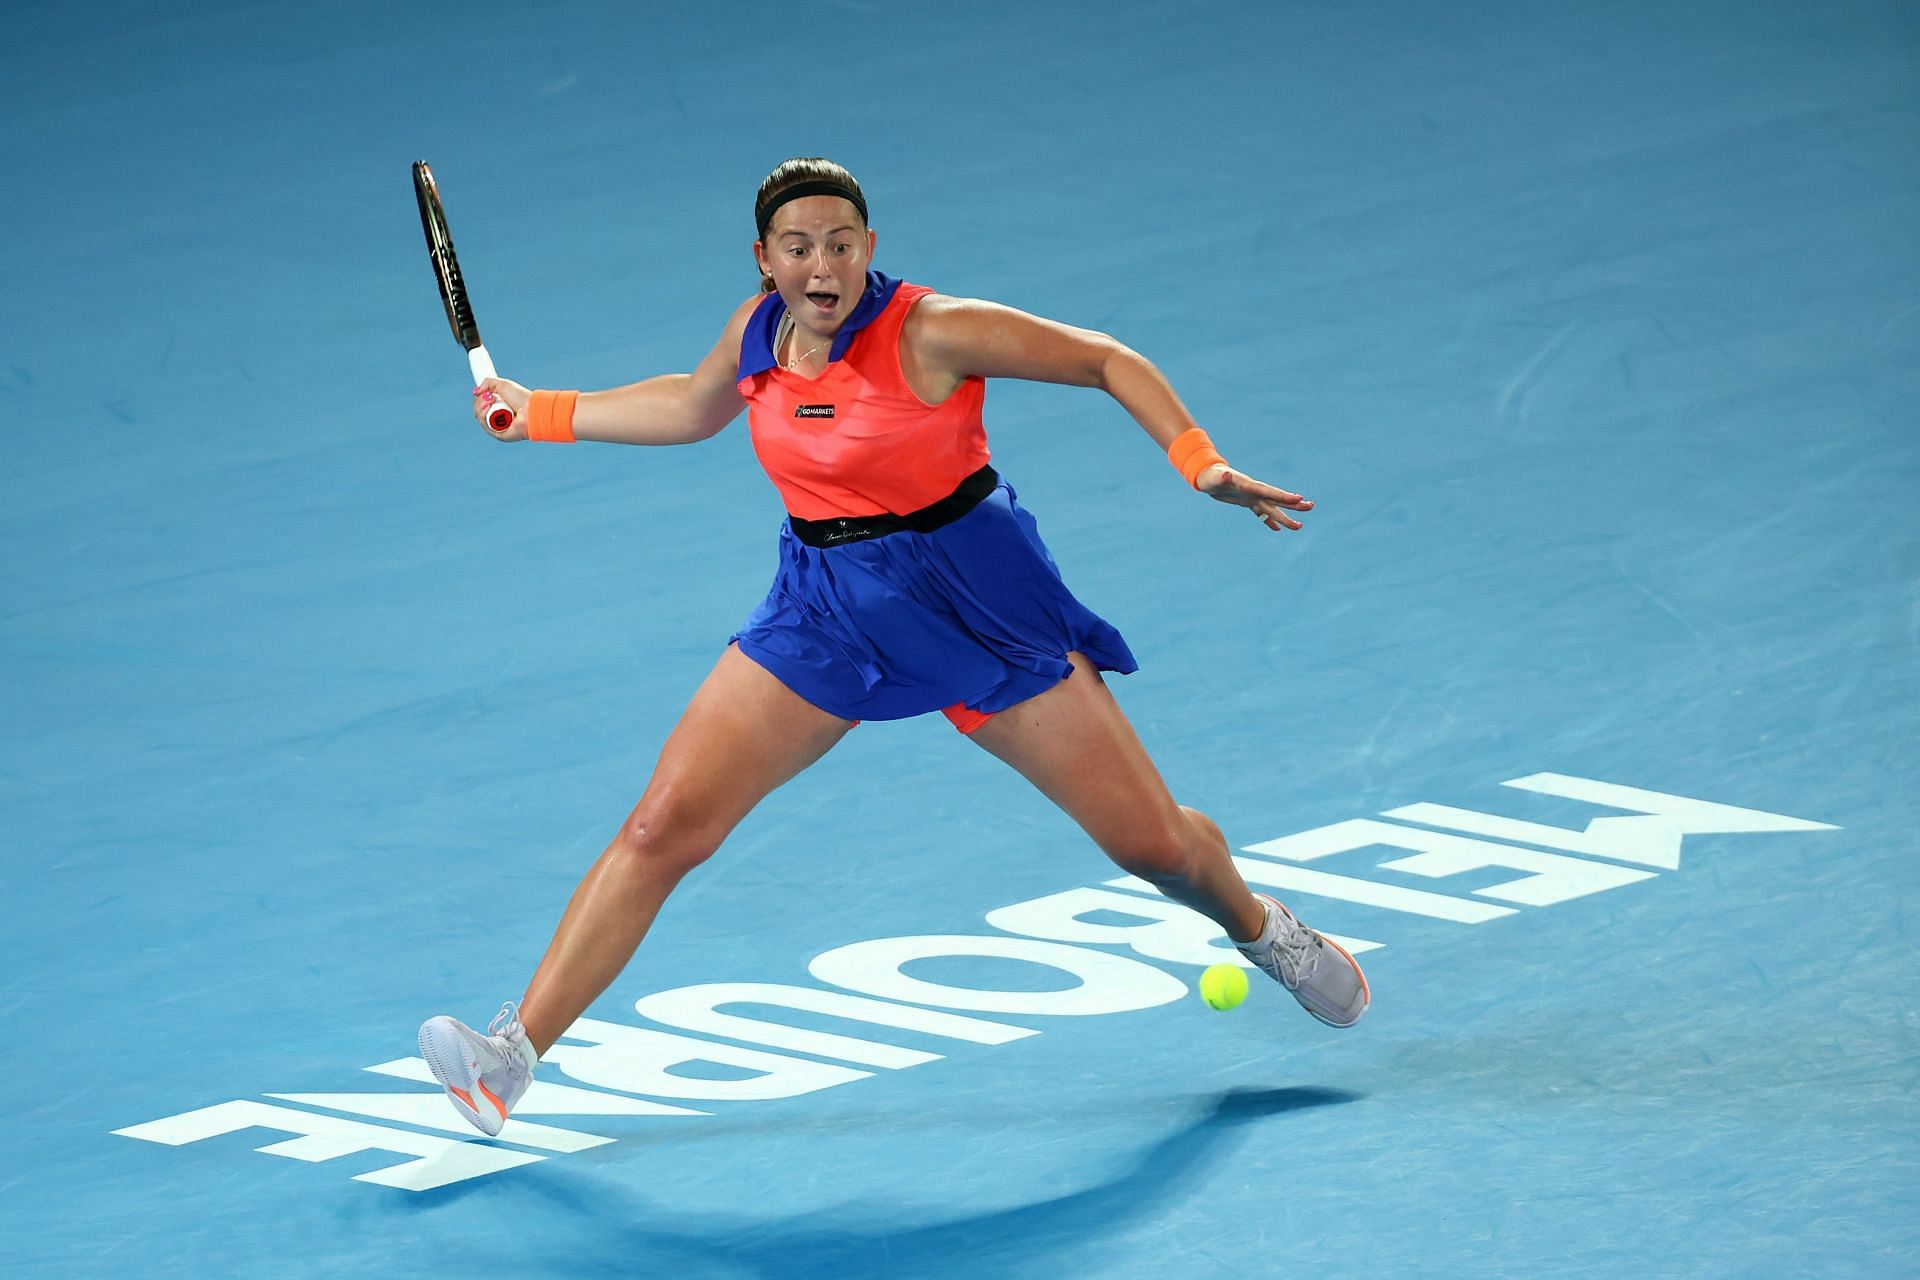 Jelena Ostapenko in action at the Australian Open